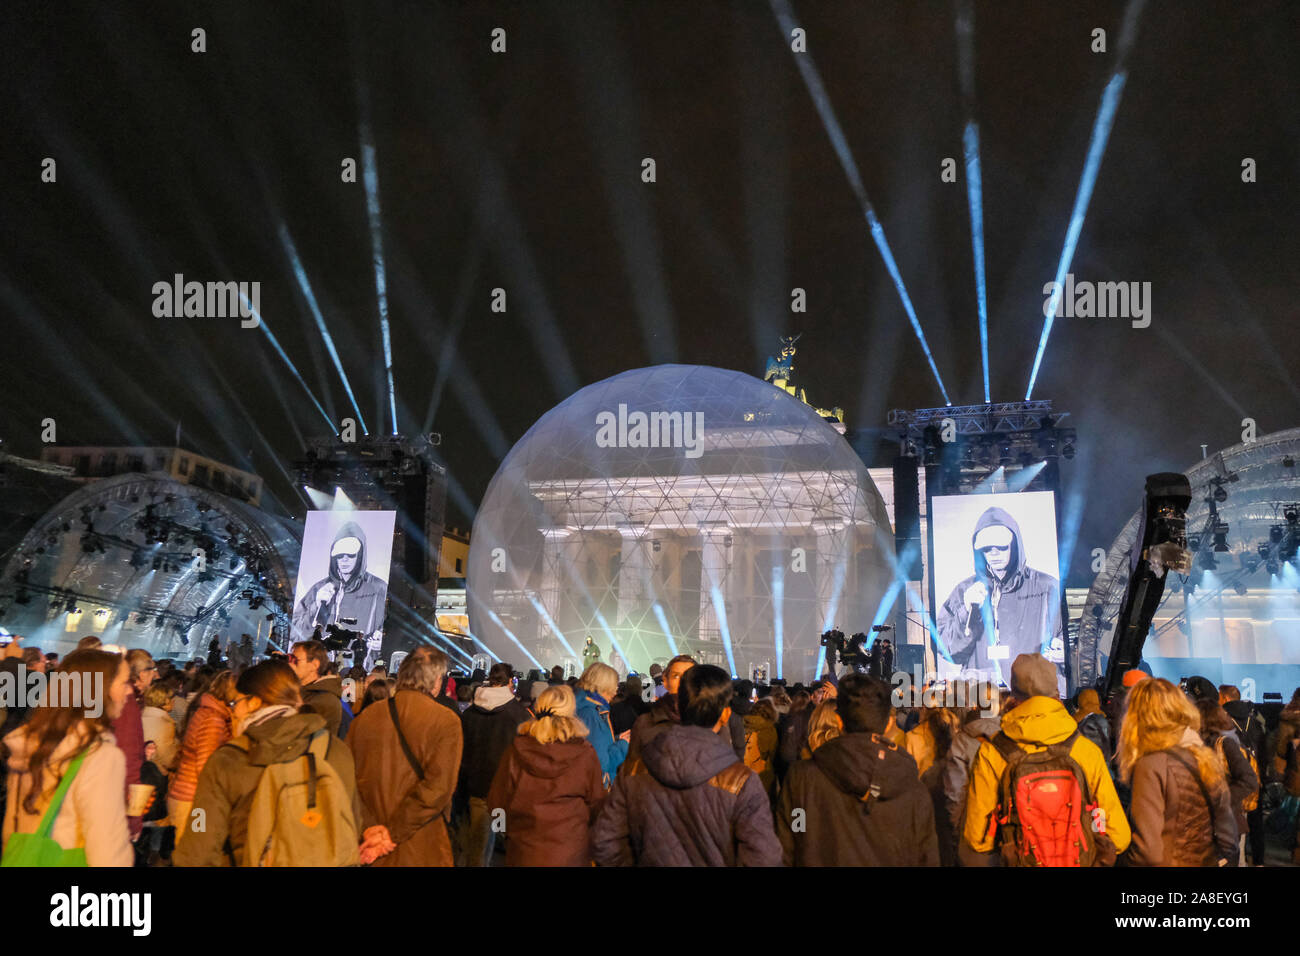 Concert de rock et lumière à la porte de Brandebourg pour marquer le 30e anniversaire de la chute du Mur de Berlin Banque D'Images